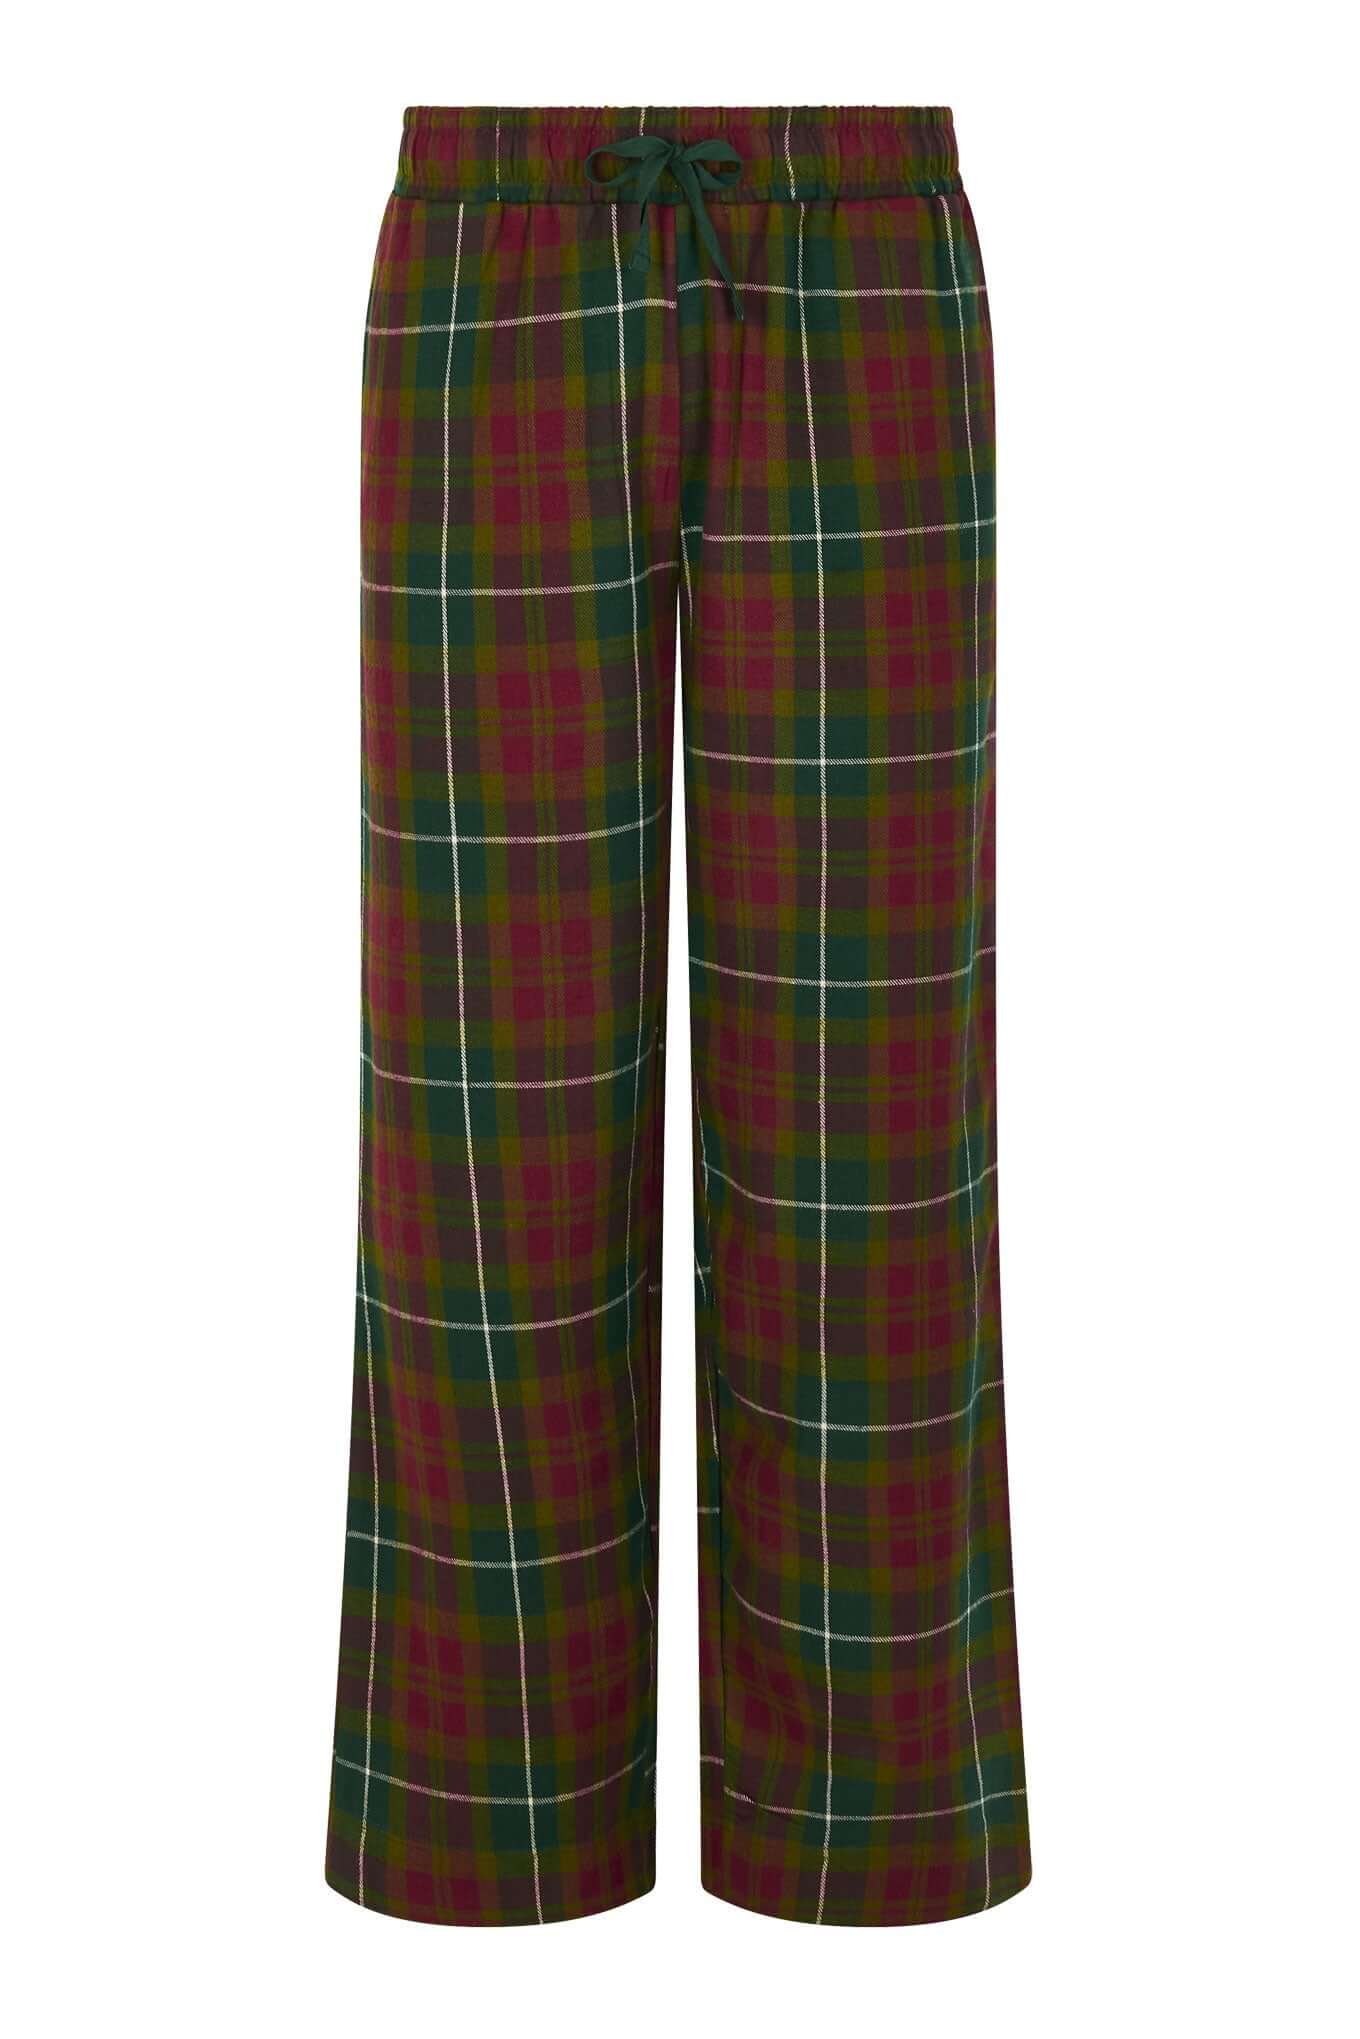 Colorful pajama pants JIM JAM made from 100% organic cotton from Komodo